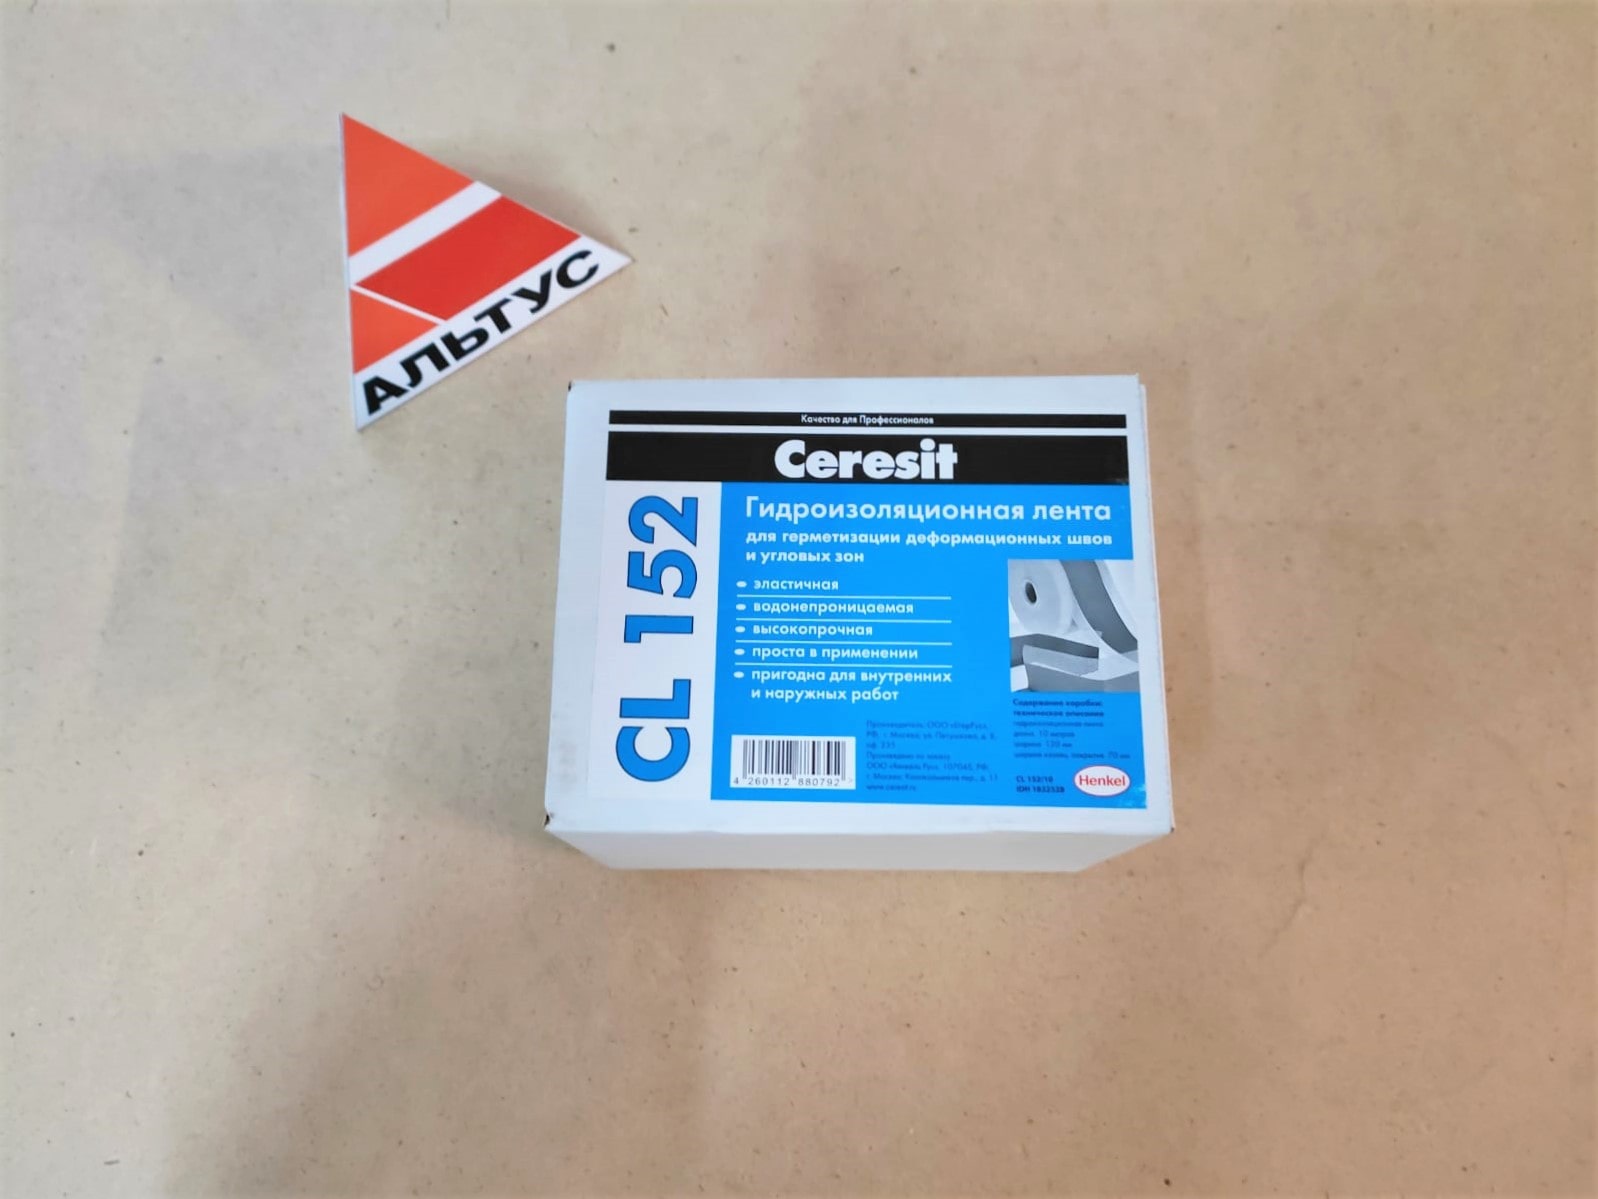 Уплотнительная лента для гермитизации швов CL 152/10 Ceresit